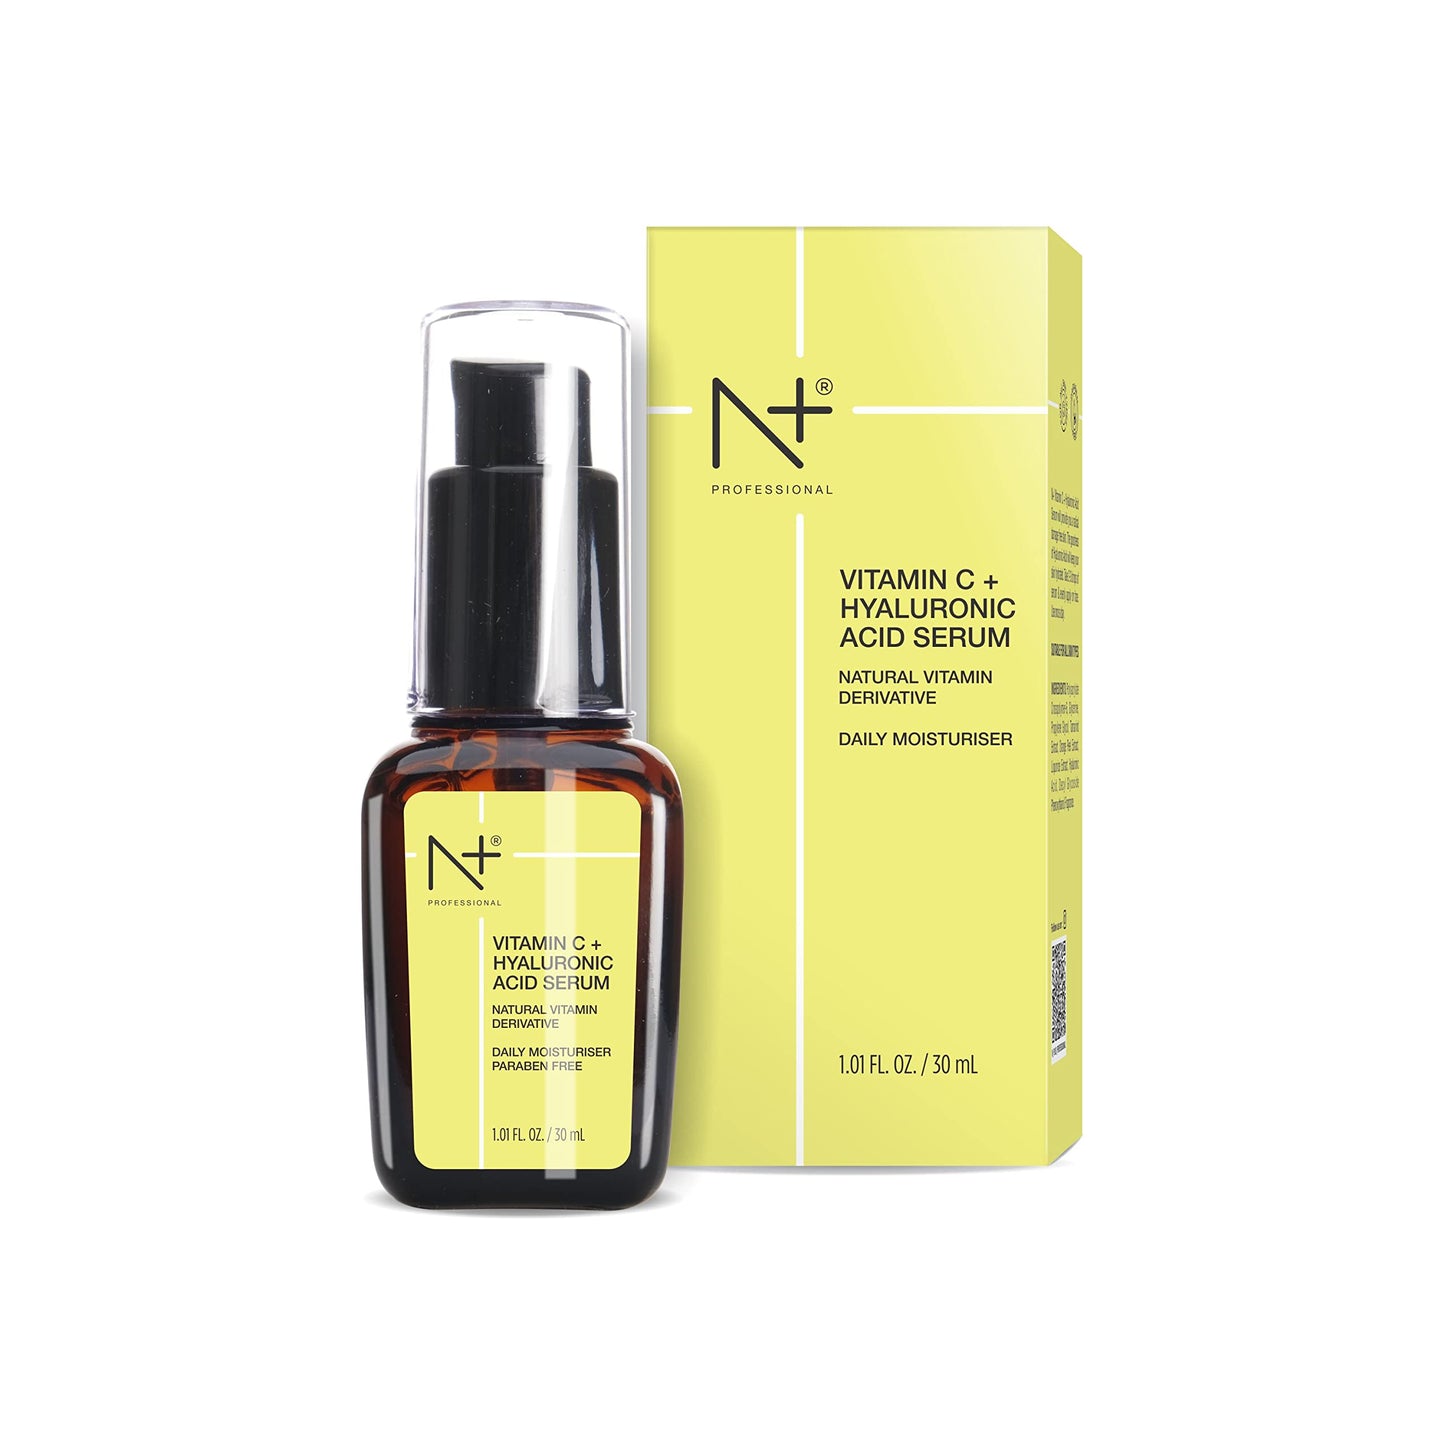 N Plus Professional 20% Vitamin C & Hyaluronic Acid Paraben Free Face Serum for Skin Radiance & Glowing Skin, 30ml/1.01 FL. OZ.